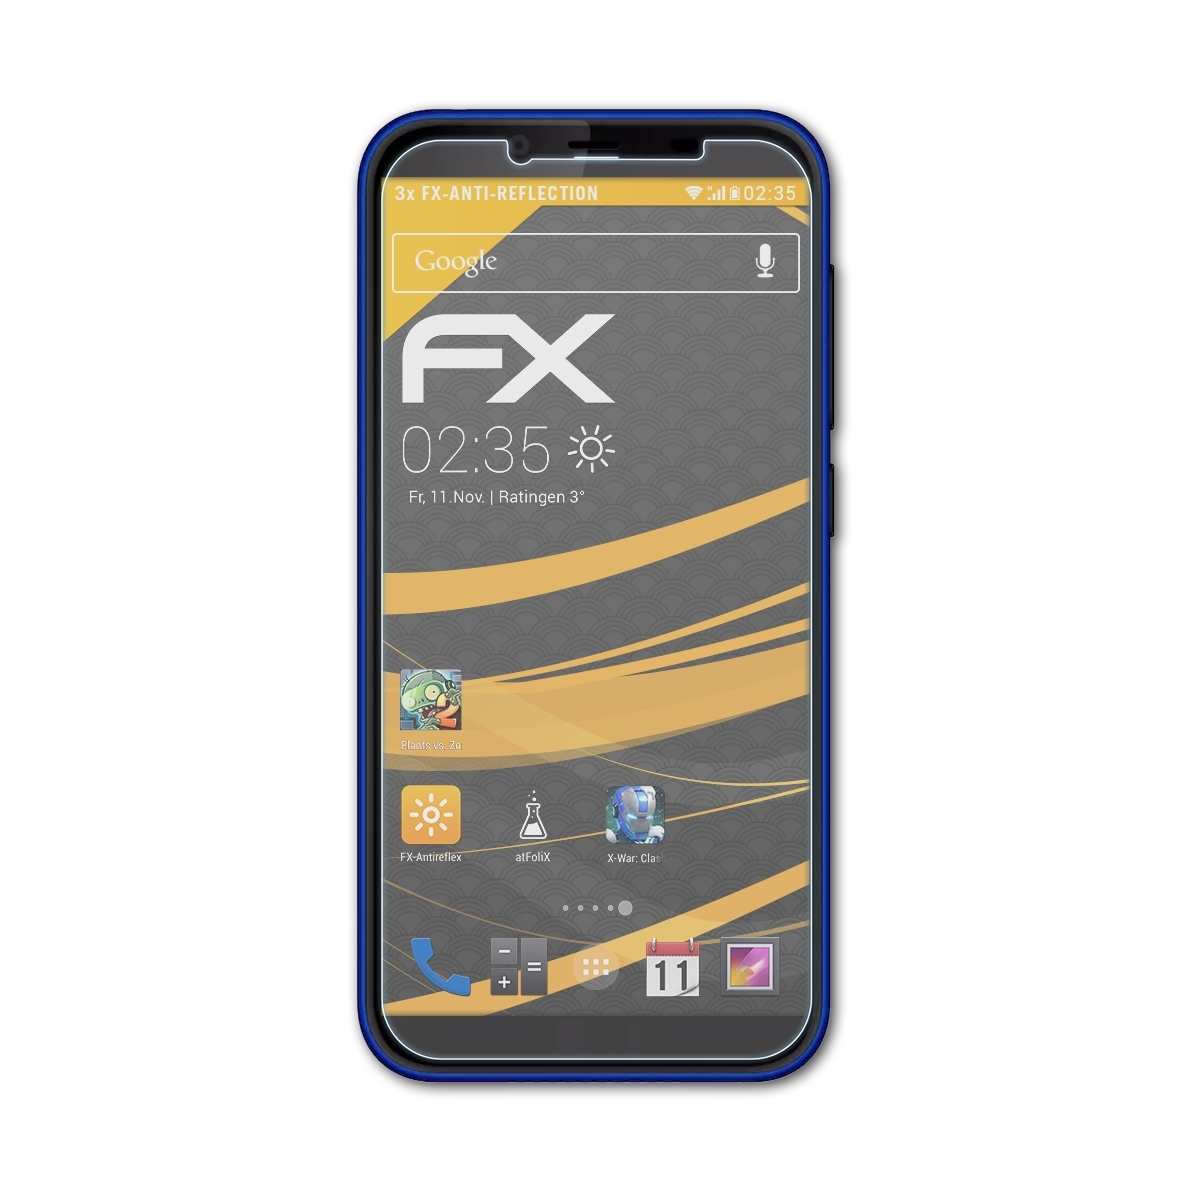 ATFOLIX 3x FX-Antireflex Displayschutz(für Infinity Hisense E9)